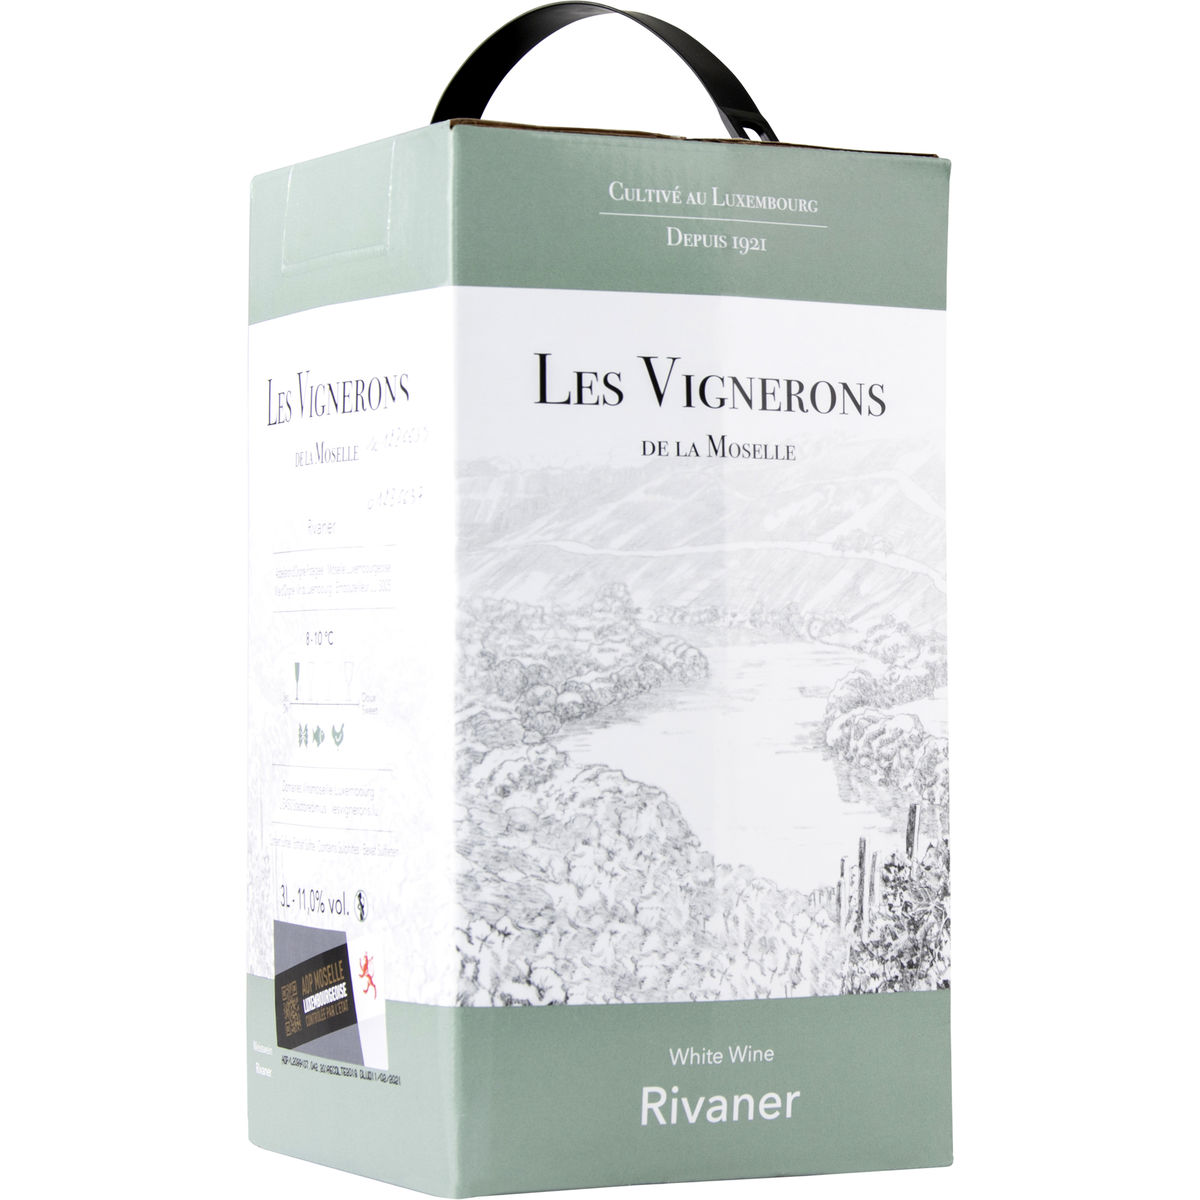 Luxemburg Les Vignerons des Domaines Vinsmoselle Witte wijn Rivaner 3L